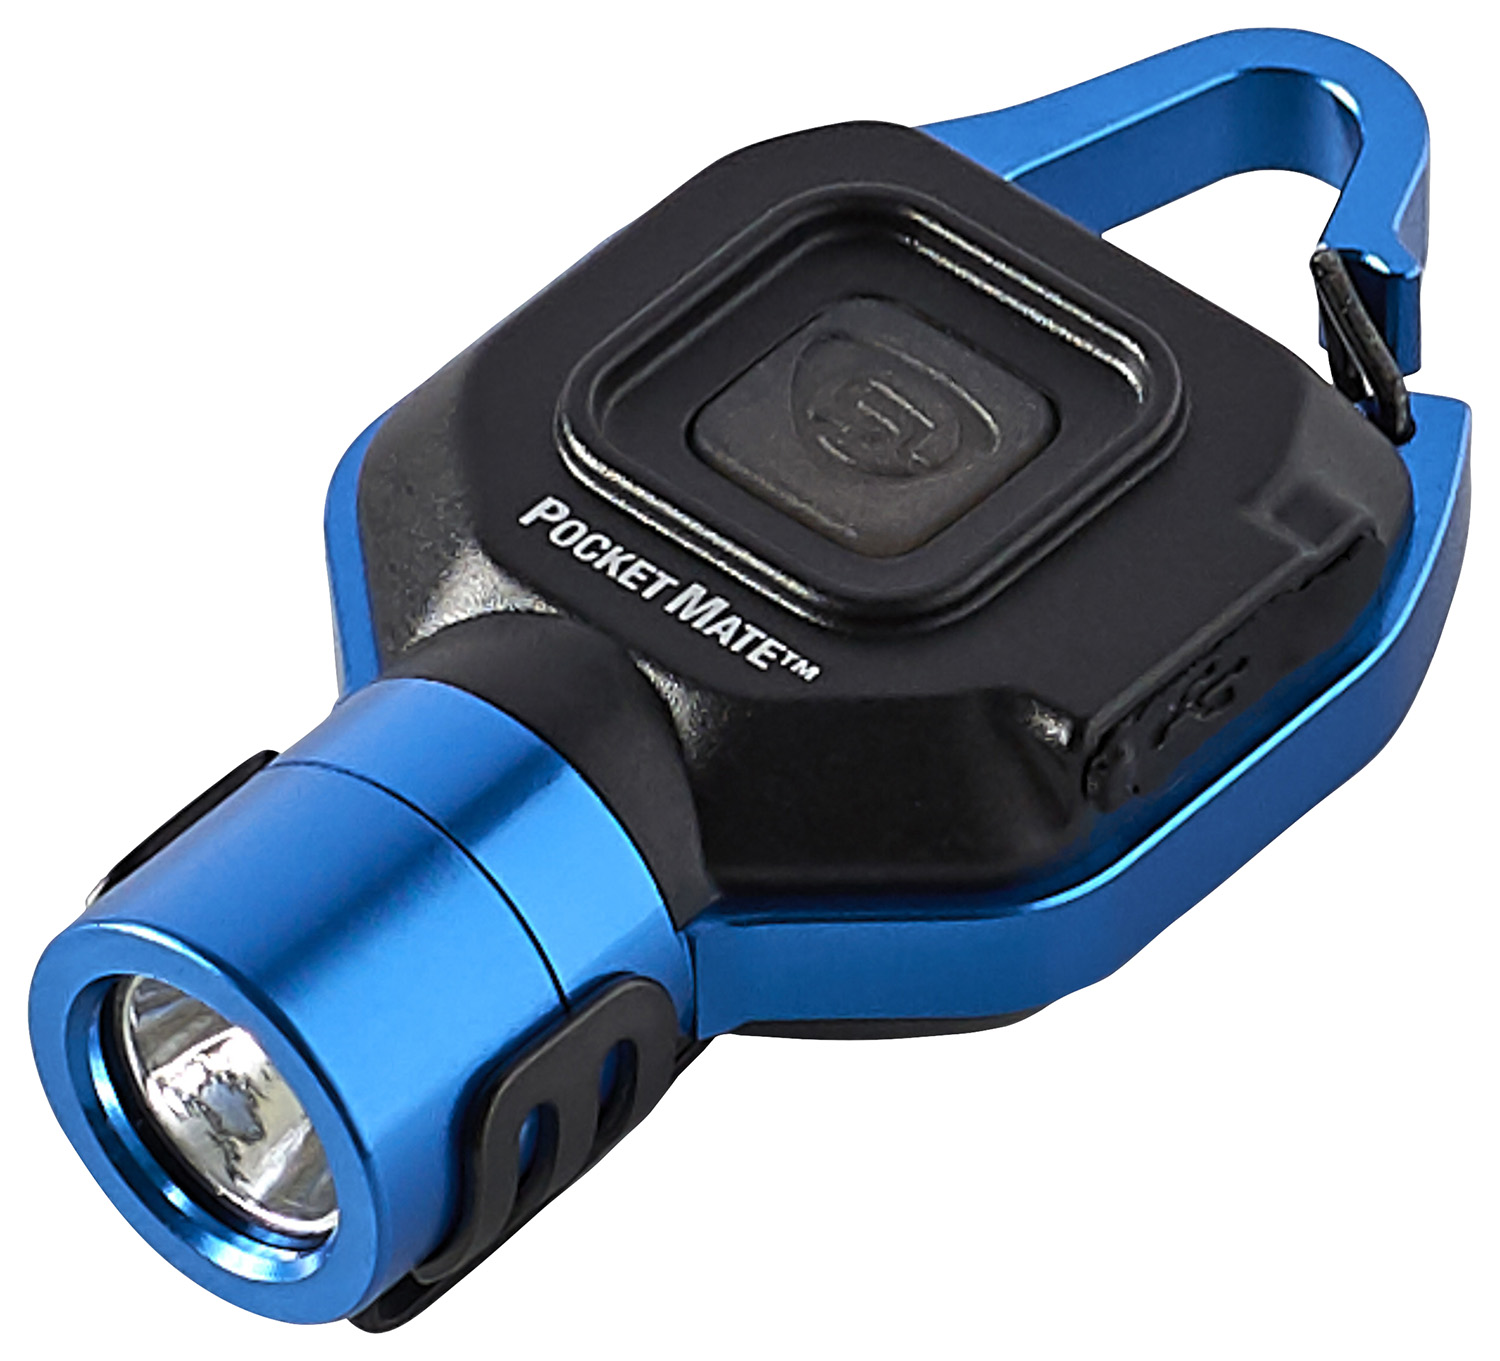 STREAMLIGHT POCKET MATE USB EDC LIGHT W/POCKET CLIP BLUE